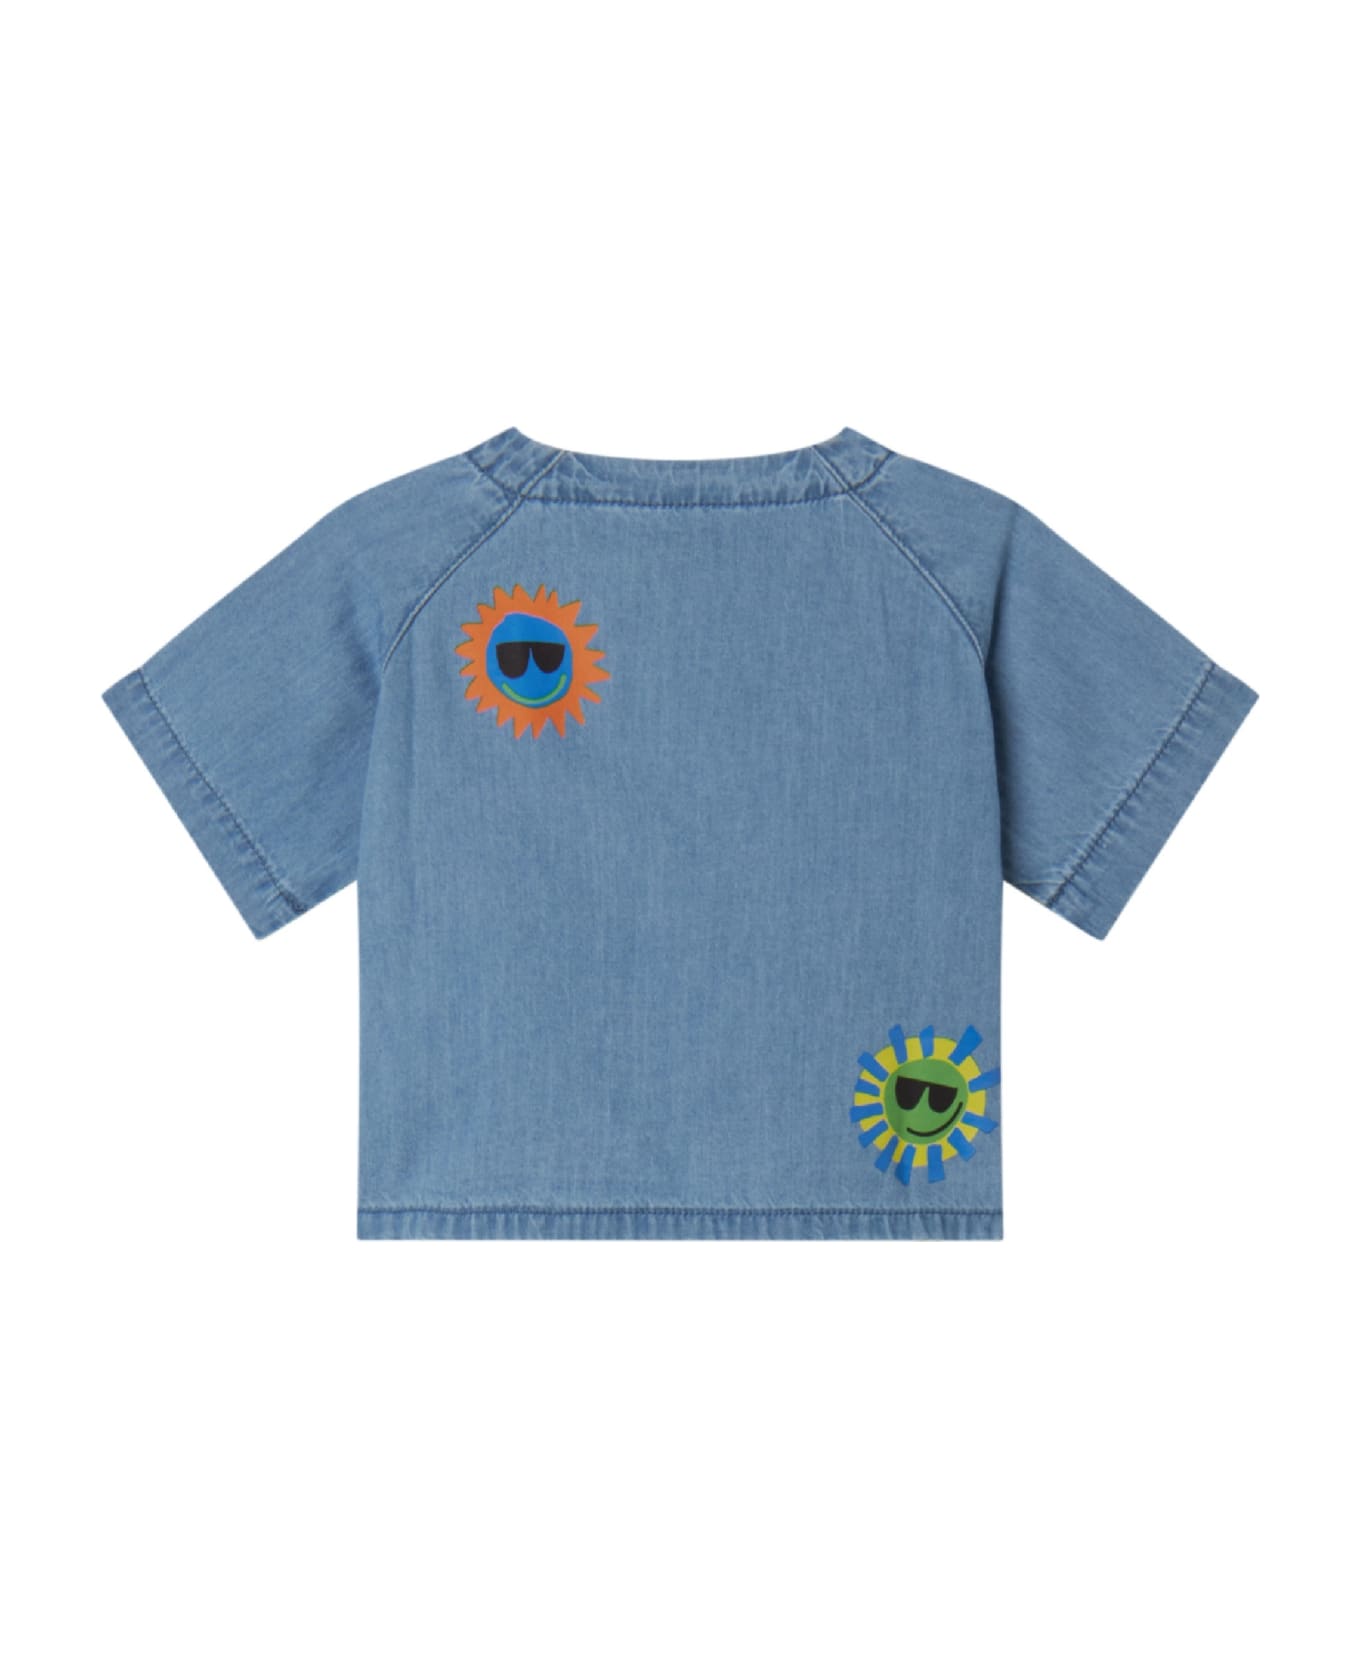 Stella McCartney Kids Camicia Con Stampa - Light blue シャツ